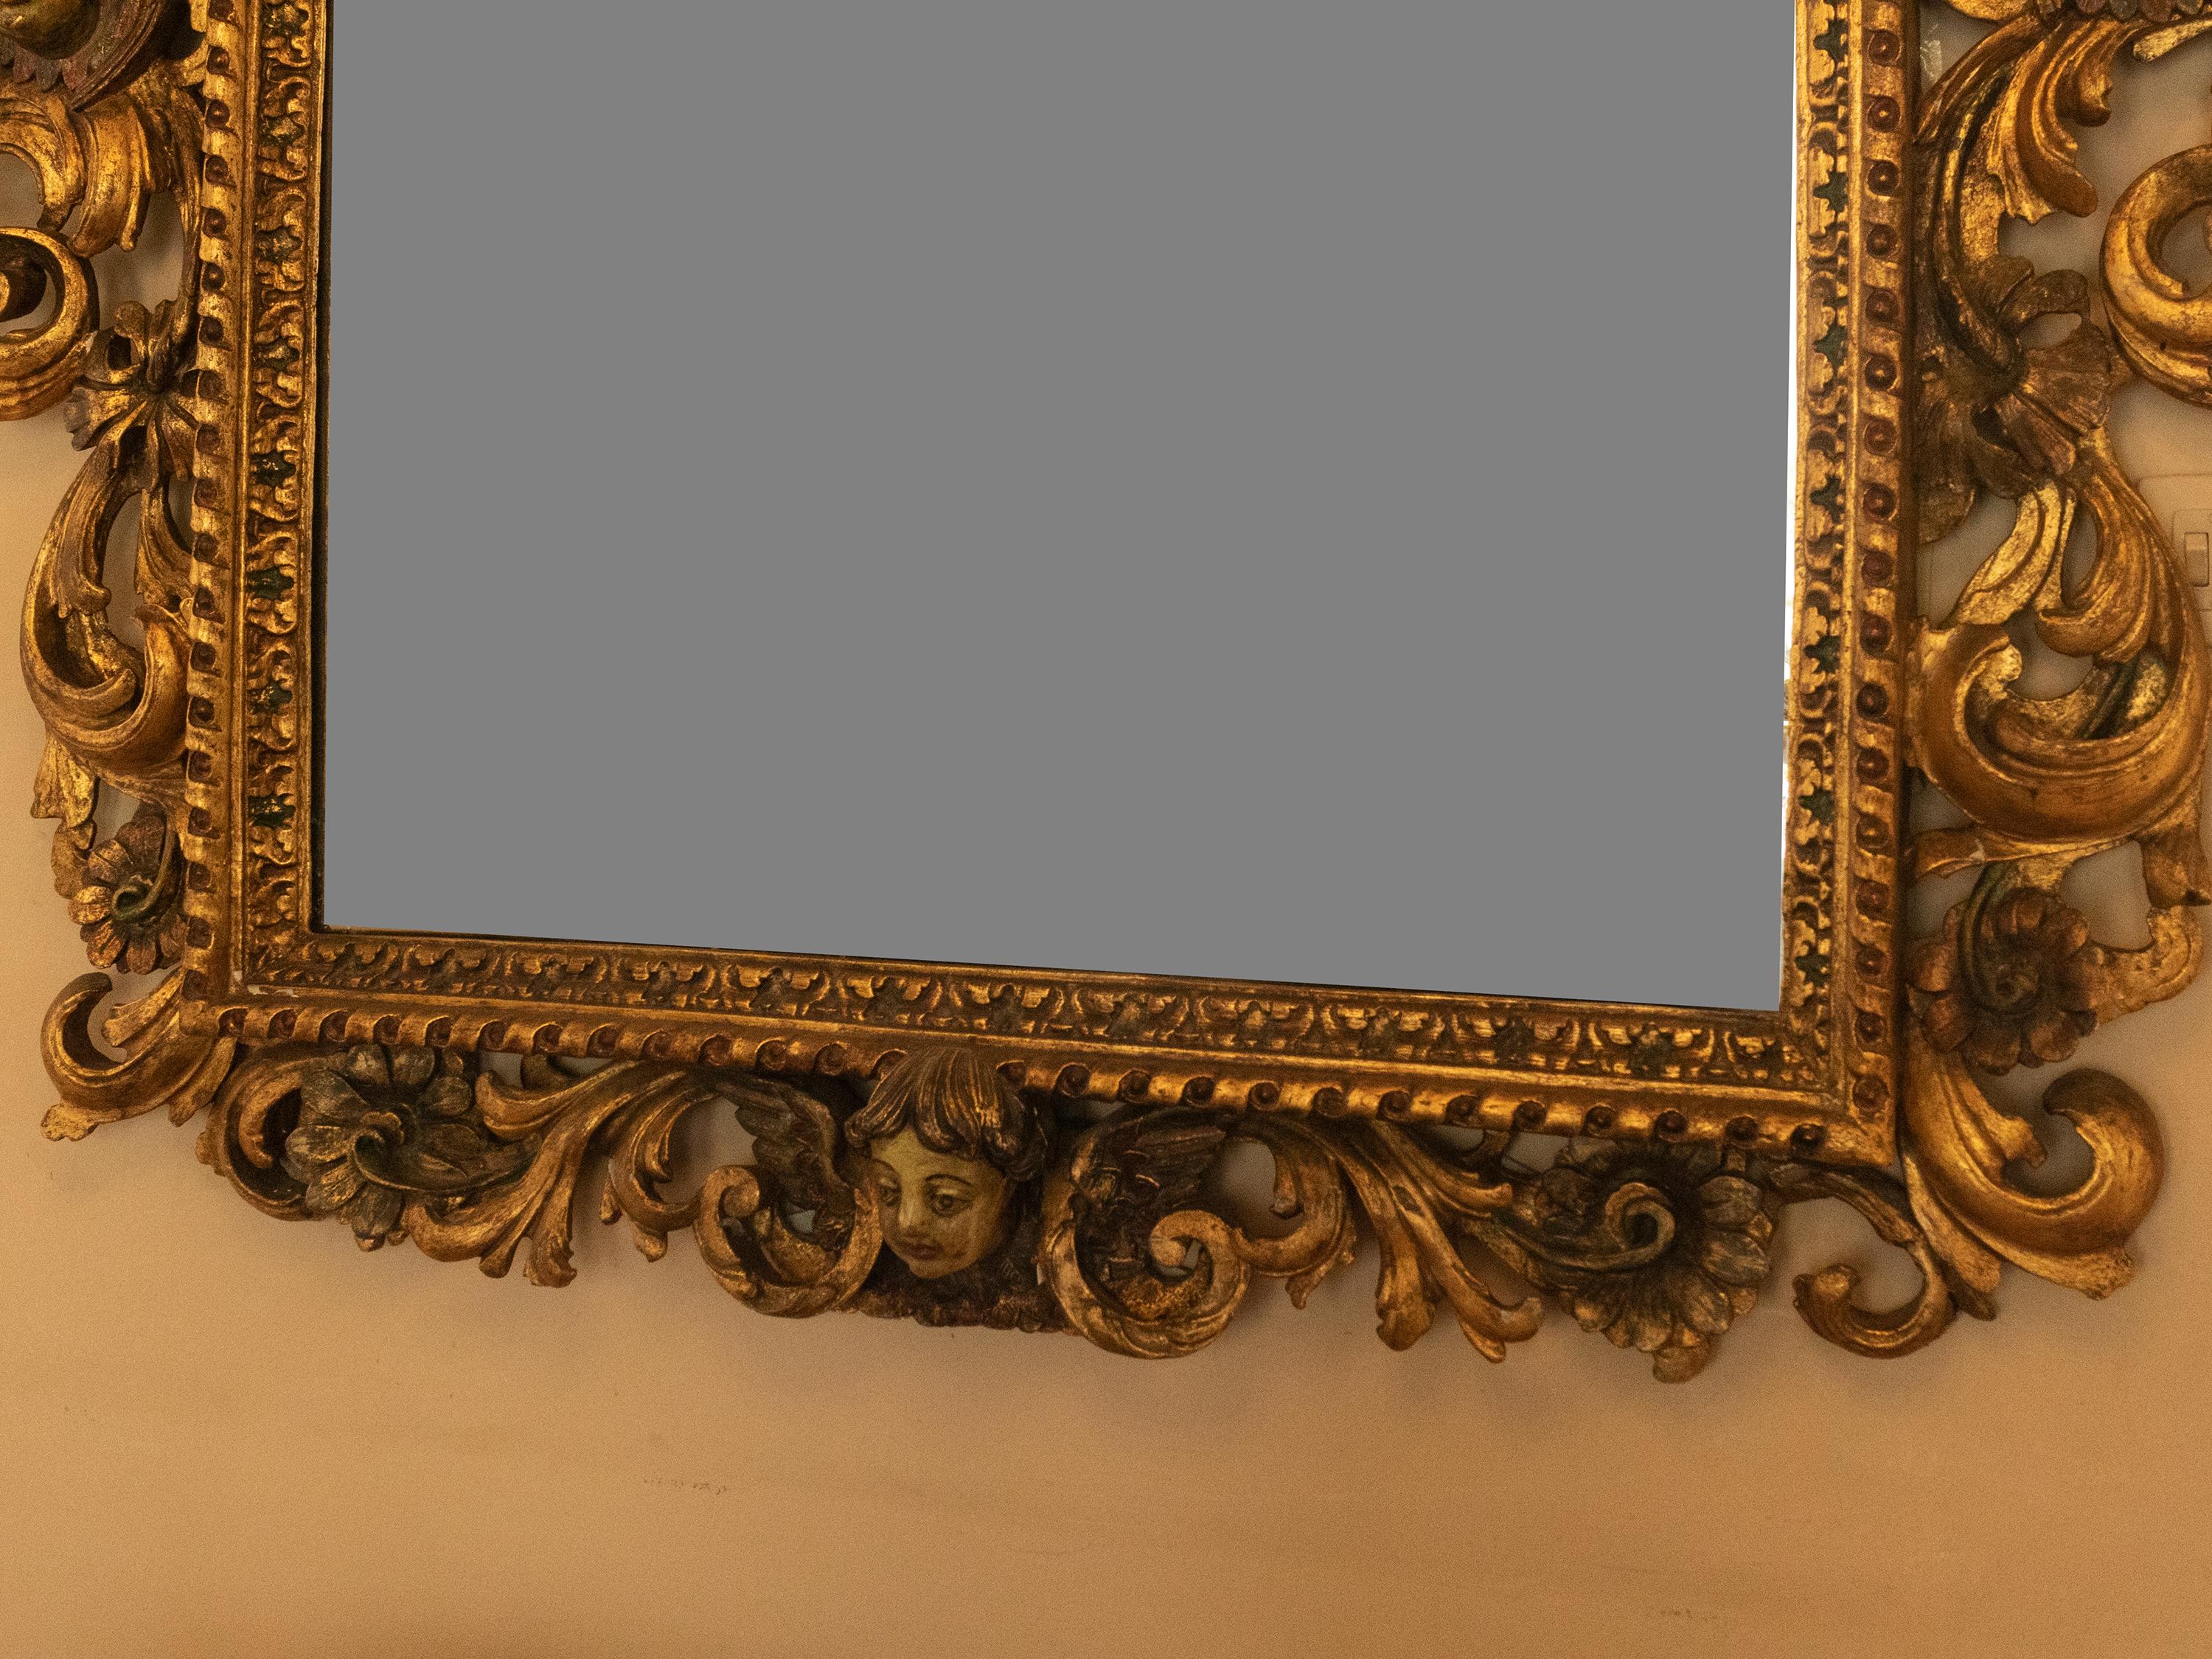 Ein bemerkenswerter und seltener Barockspiegel aus Kastanienholz aus der Zeit des portugiesischen Königs D. José mit einem wunderschön geschnitzten Rokokorahmen, der mit einer goldenen Oberfläche verziert ist. Der Spiegel ist mit gefiederten